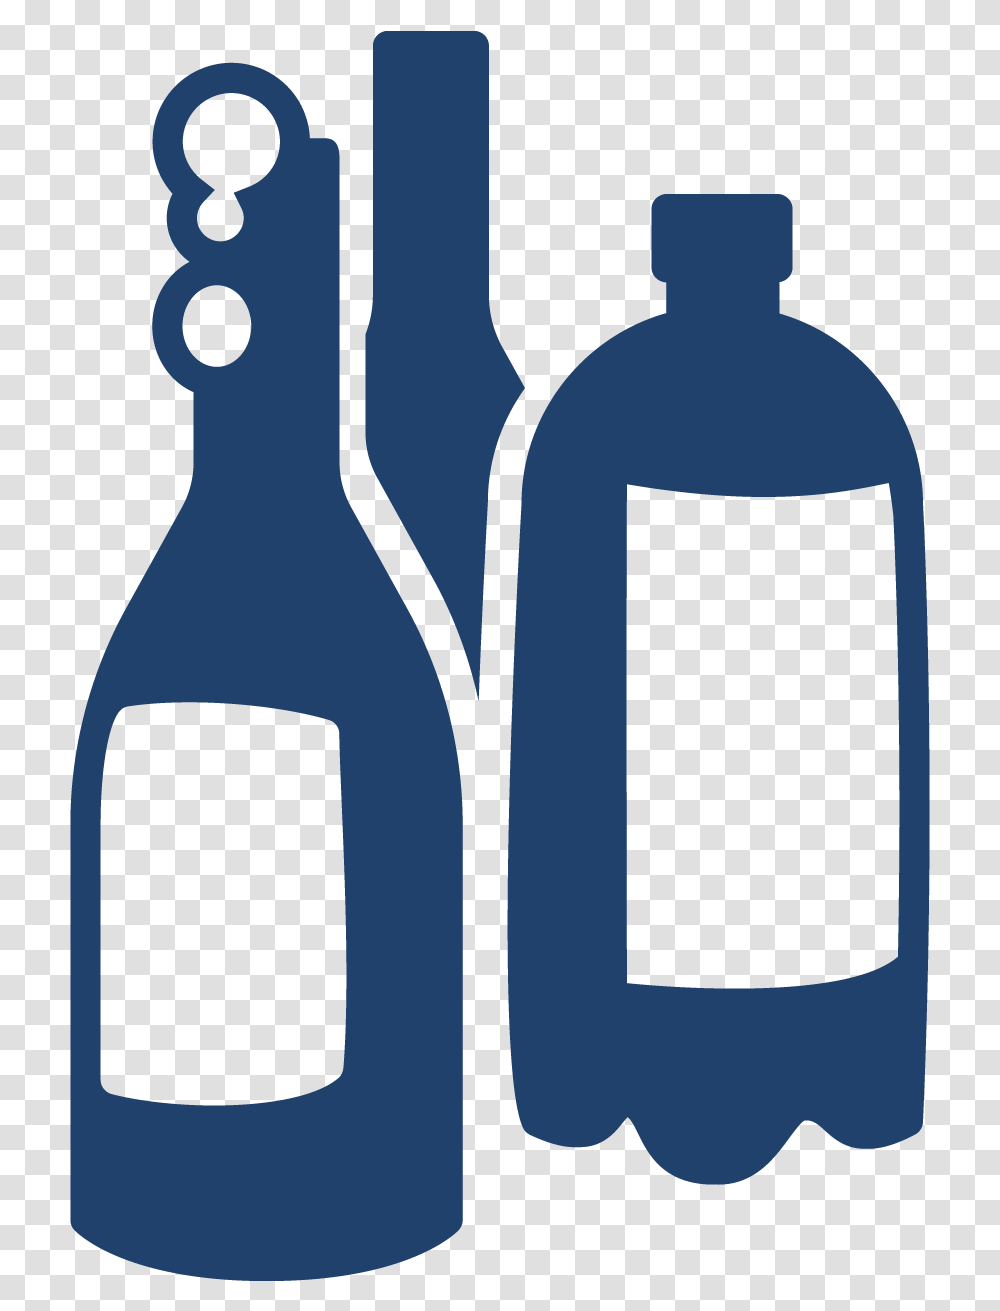 Industries Beverage Glass Bottle, Wine, Alcohol, Drink, Wine Bottle Transparent Png